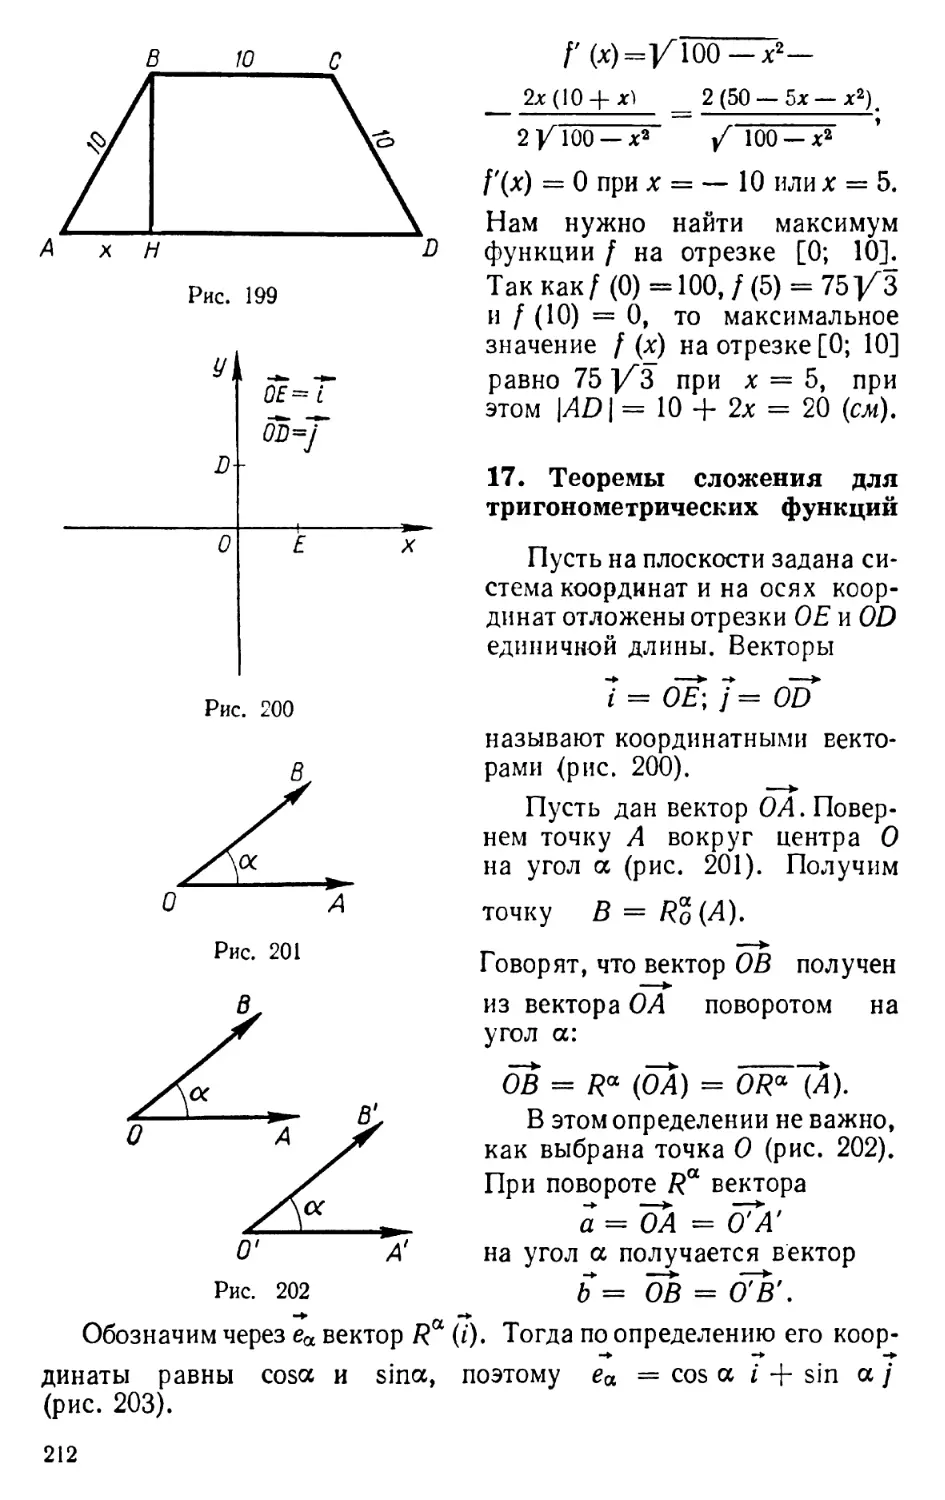 17. Теоремы сложения для тригонометрических функций